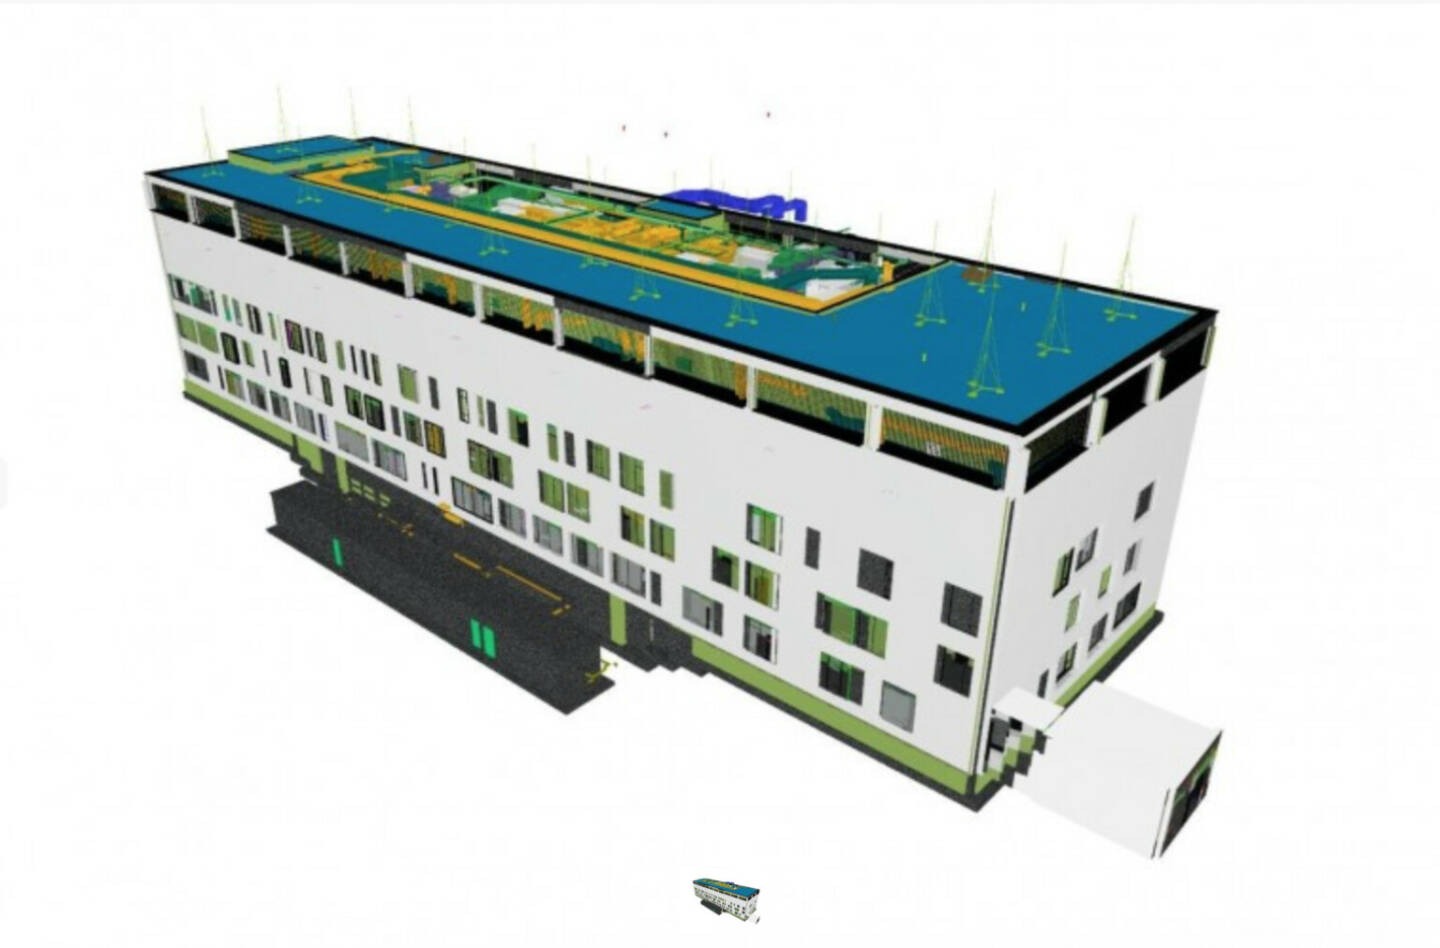 Strabag realisiert erstmals Krankenhausausbau in Polen mit BIM 5D®, im Bild: BIM 5D-Modell des Krankenhauses; Bildnachweis: Strabag